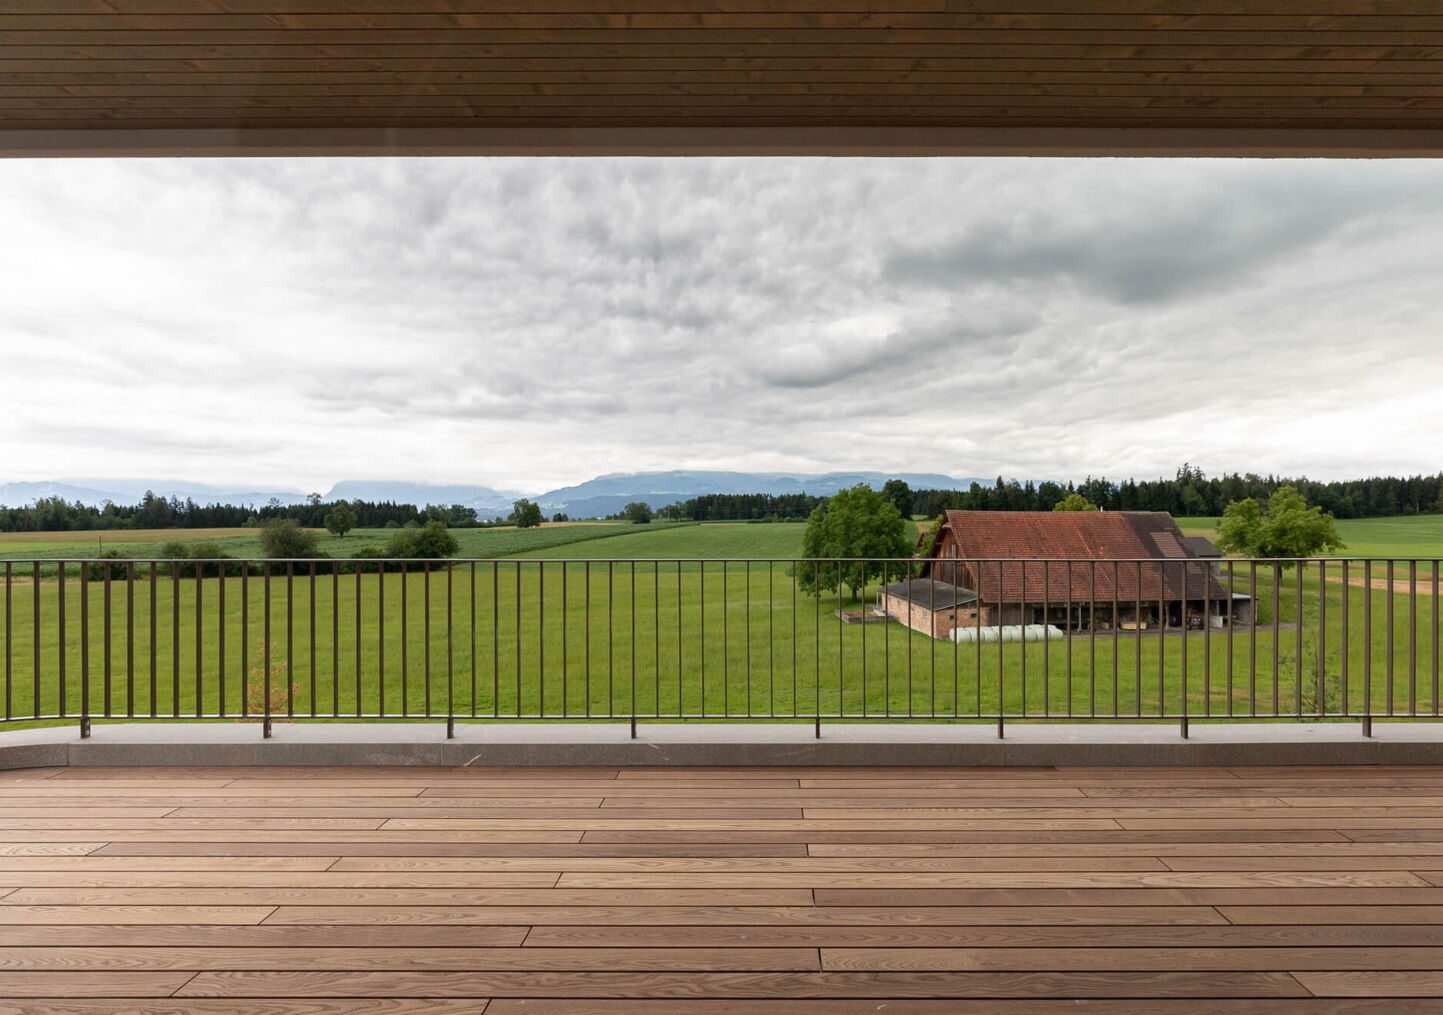 Immobilienfotografie Luzern: Balkonaussicht von Wohnung auf dem Land